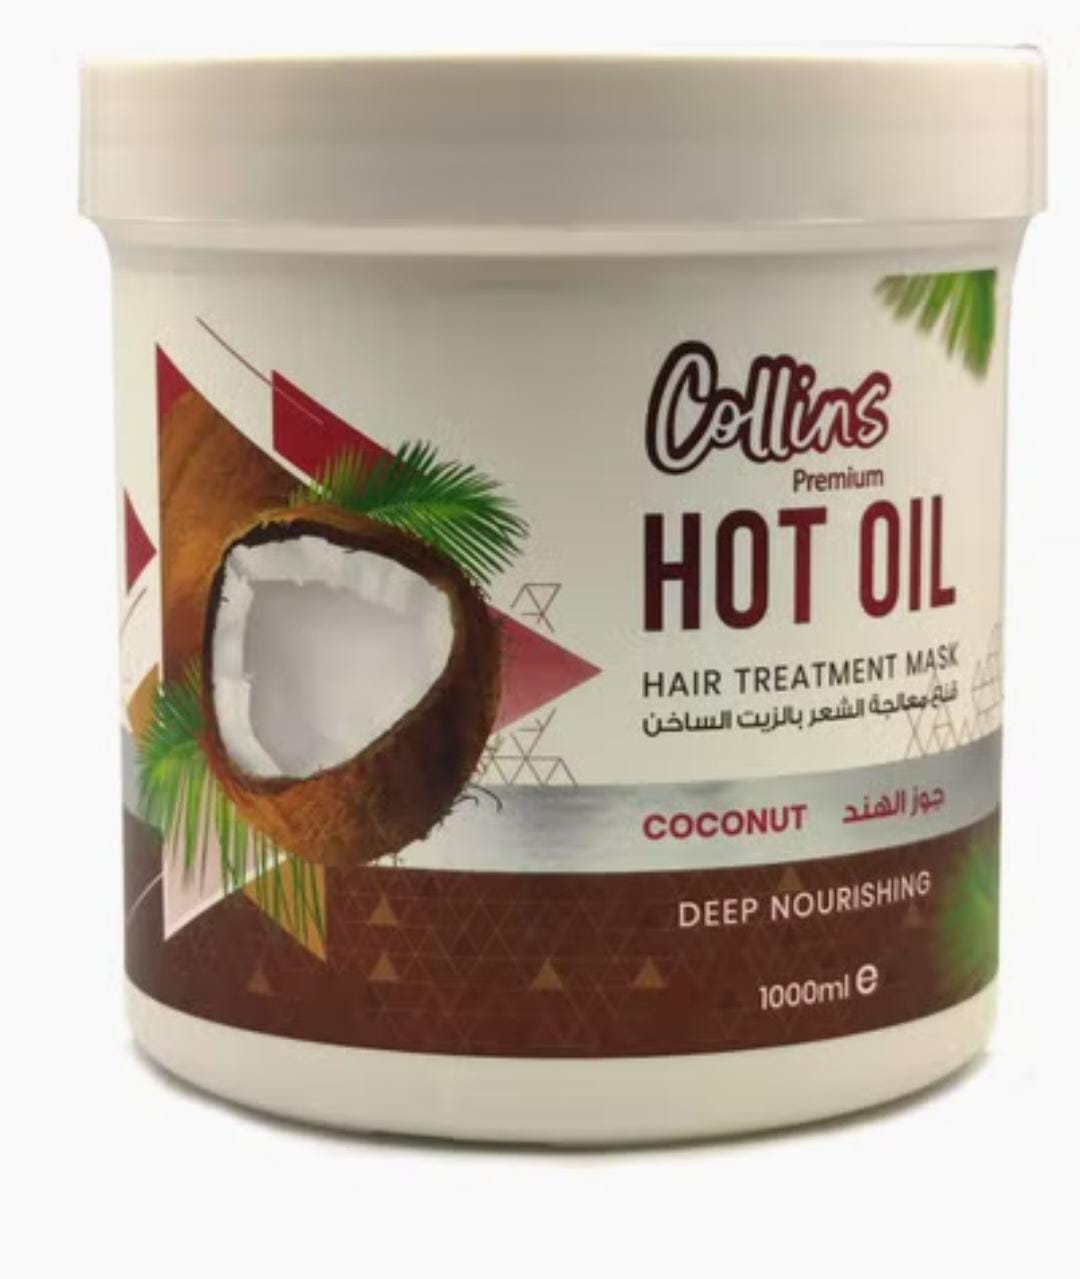 Collins hot oil coconut 1000ml